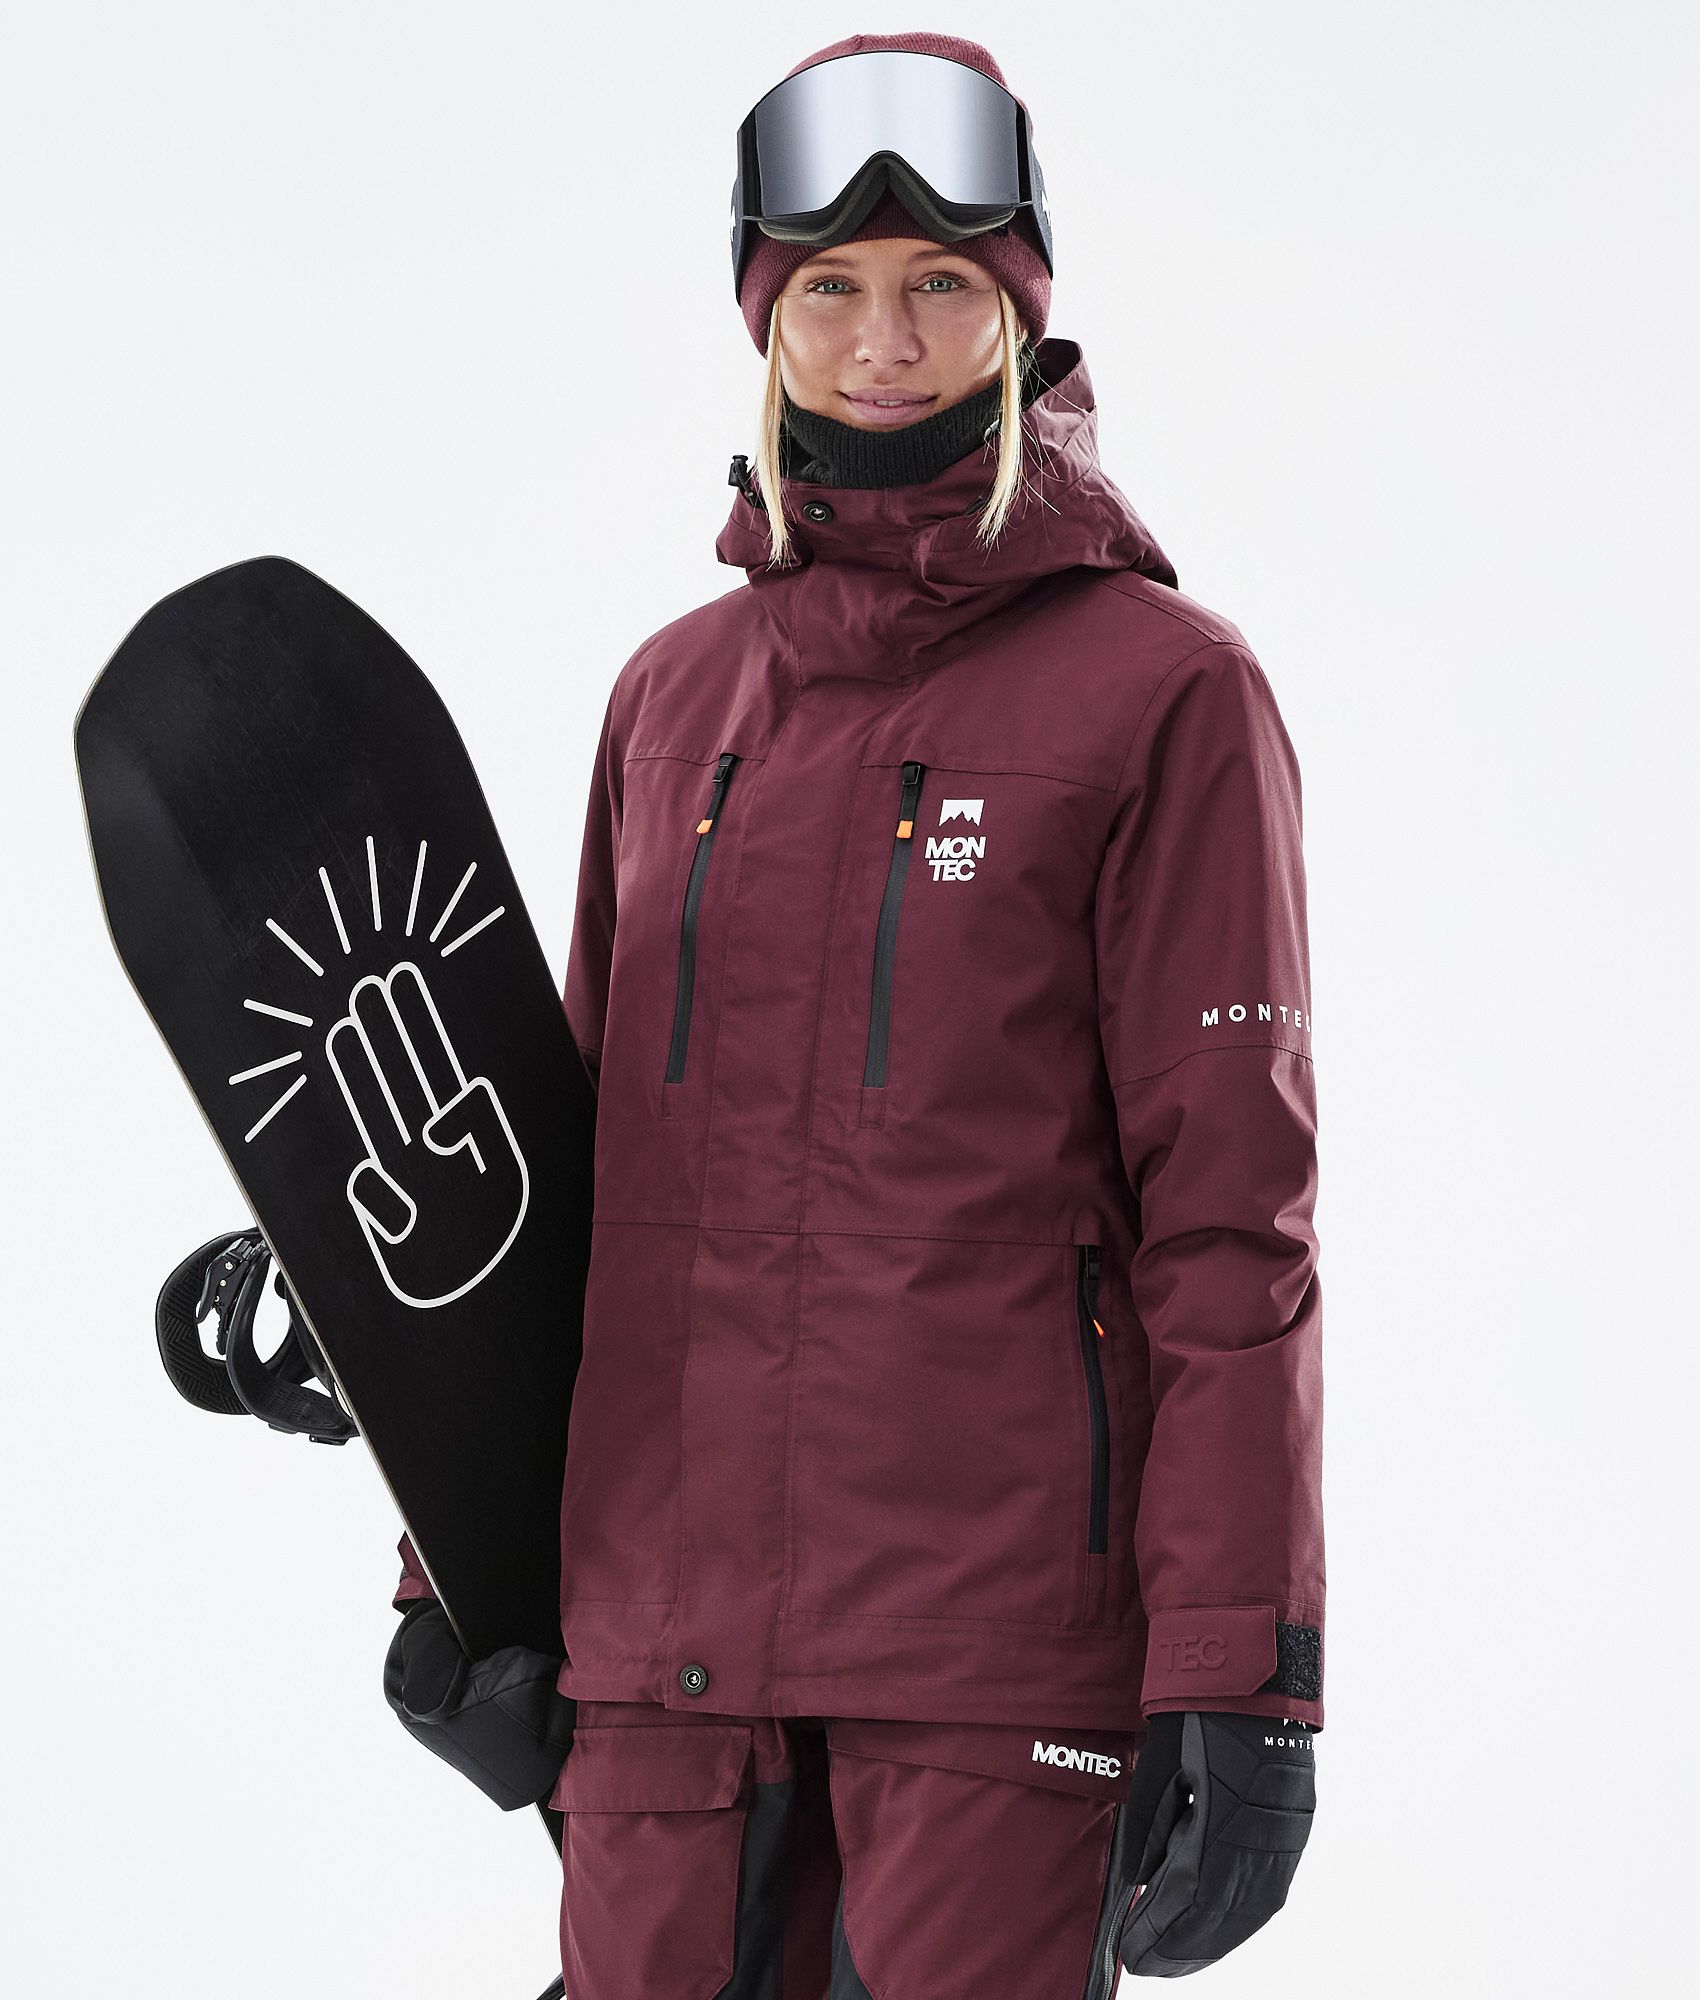 Homme Hiver Chaud Ski Veste Imperméable Manteau Pantalon costumes Snowboard  costumes de neige Aftermarket Worrylibre Exclusivité en ligne Achats en  ligne à à prix réduit mitsubishicleansuivn